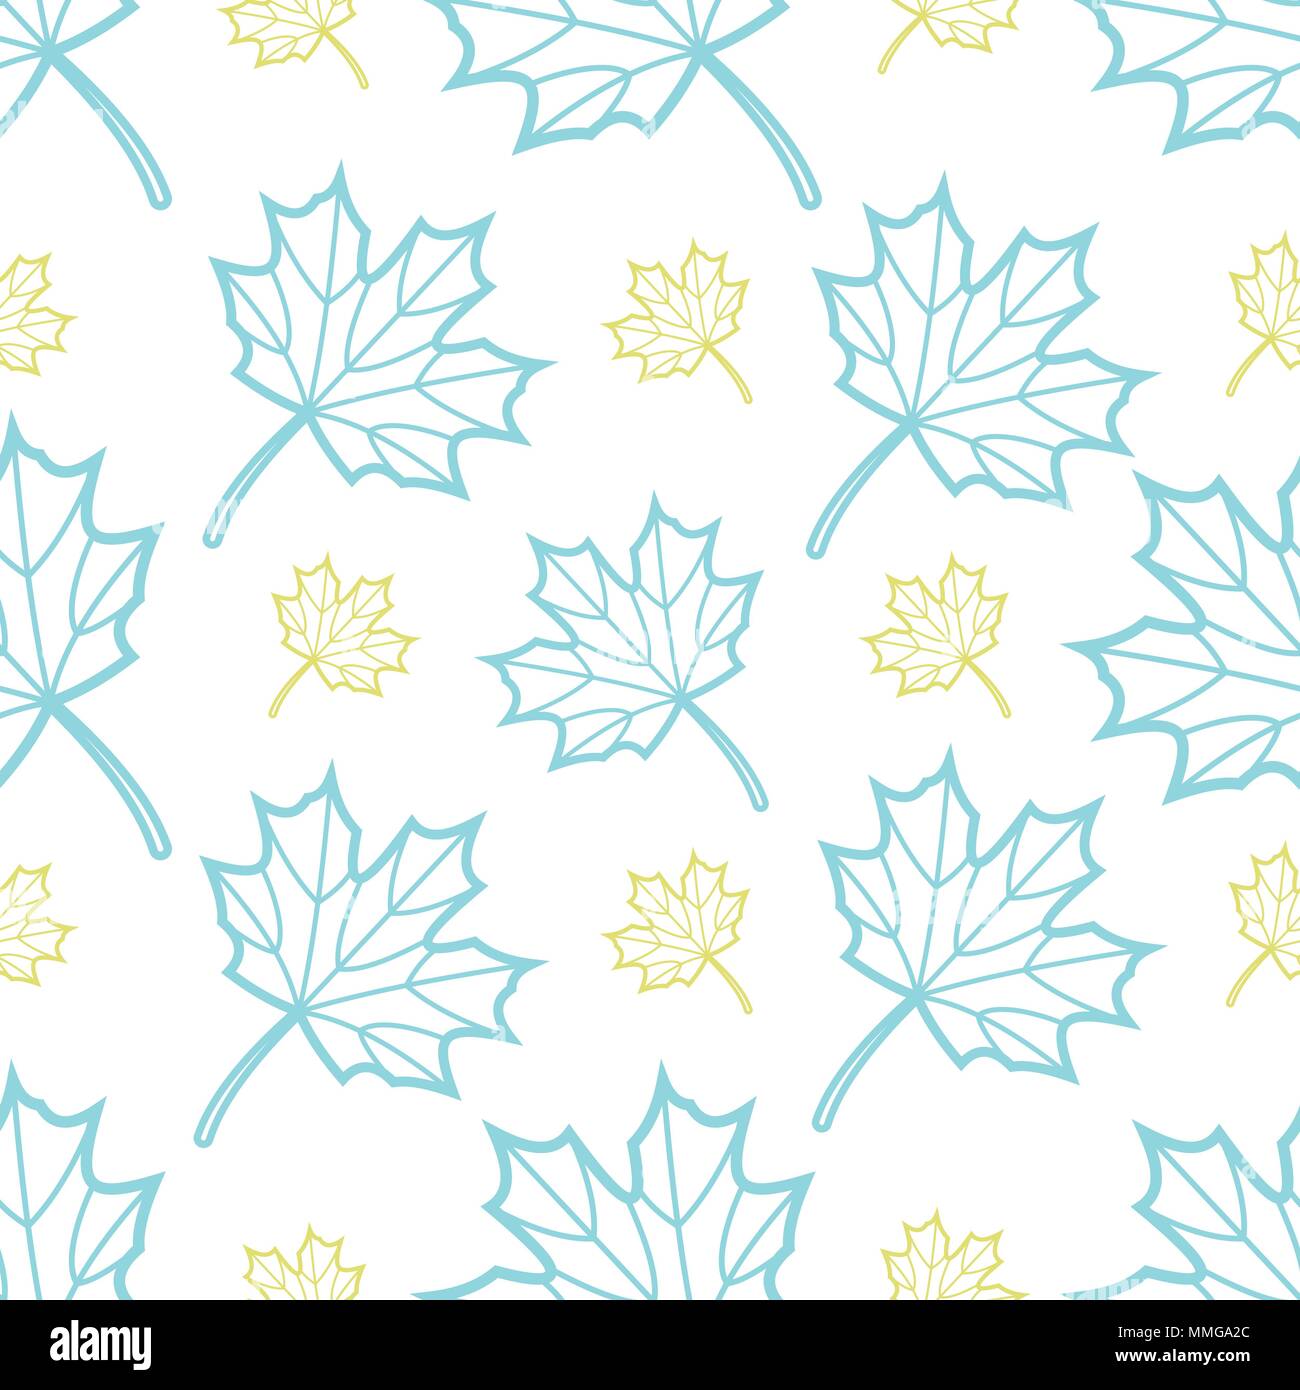 Lindo azul y oro perdido hojas de arce aleatorios sobre fondo blanco. Diseño de fondo de la trama perfecta para otoño o caer en ilustración vectorial. Ilustración del Vector